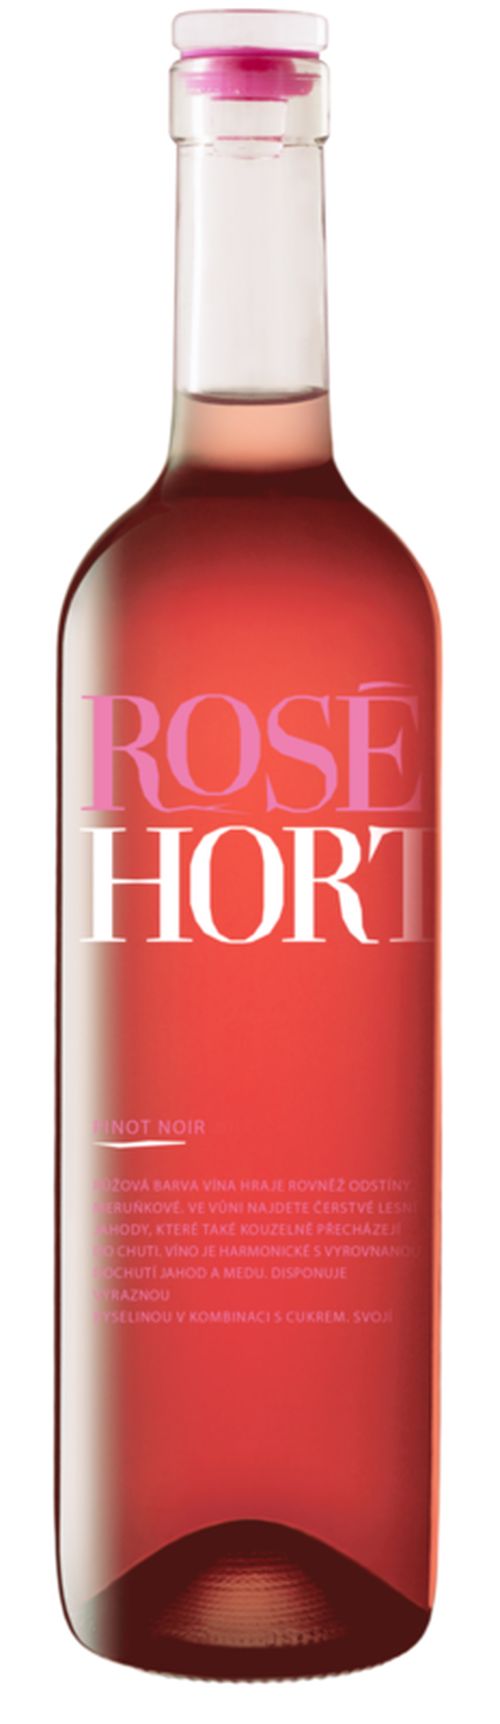 Hort Pinot Noir Rosé Pozdní sběr Jakostní známkové víno 2019 0,75l 13% Etiketa